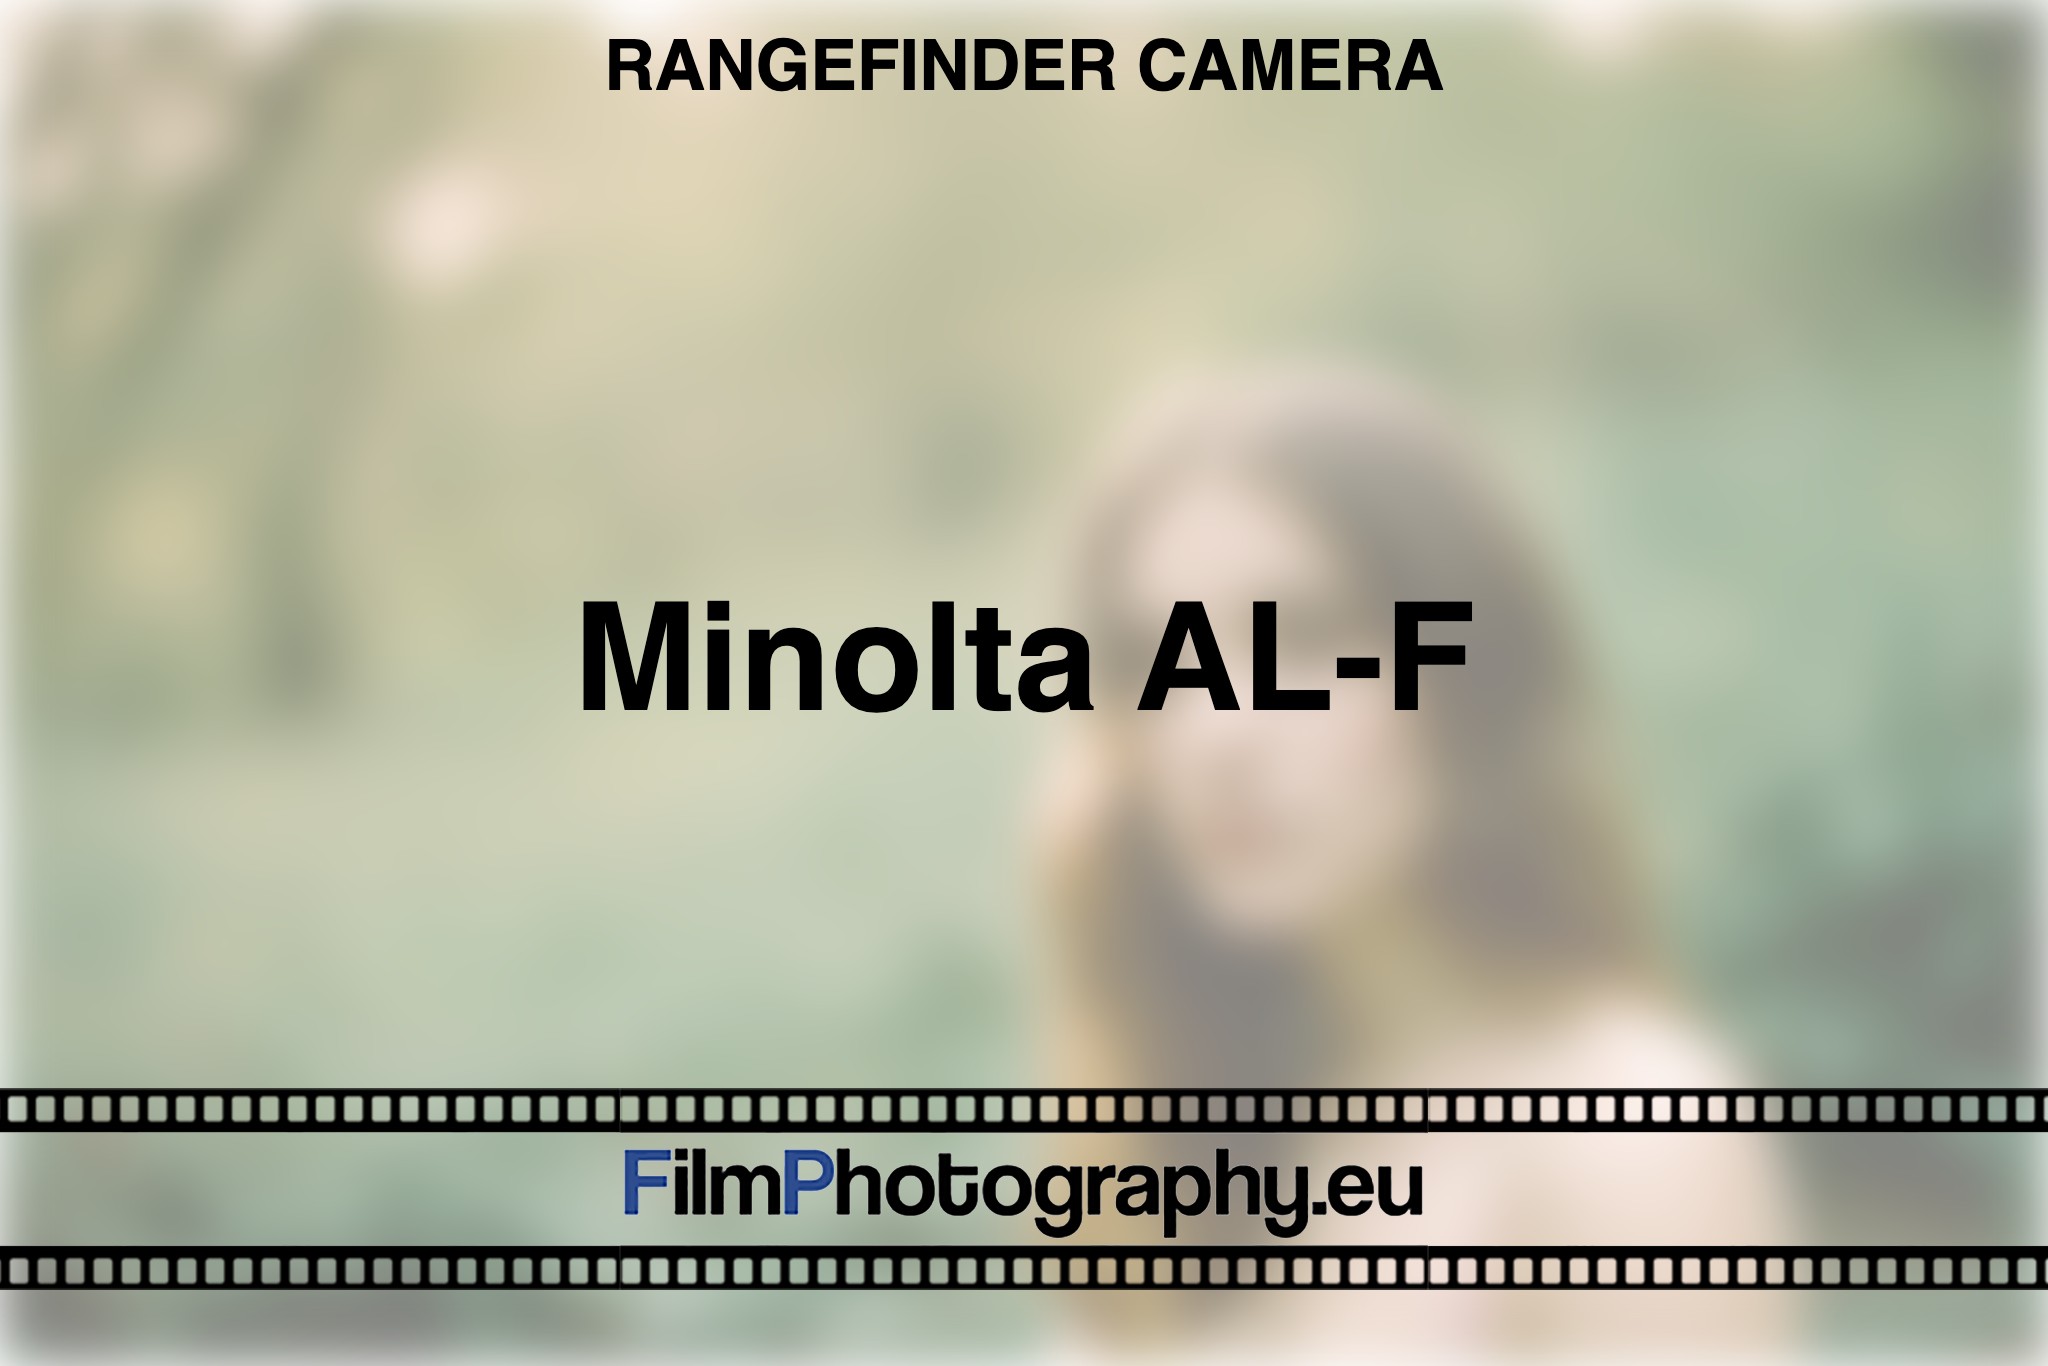 minolta-al-f-rangefinder-camera-bnv